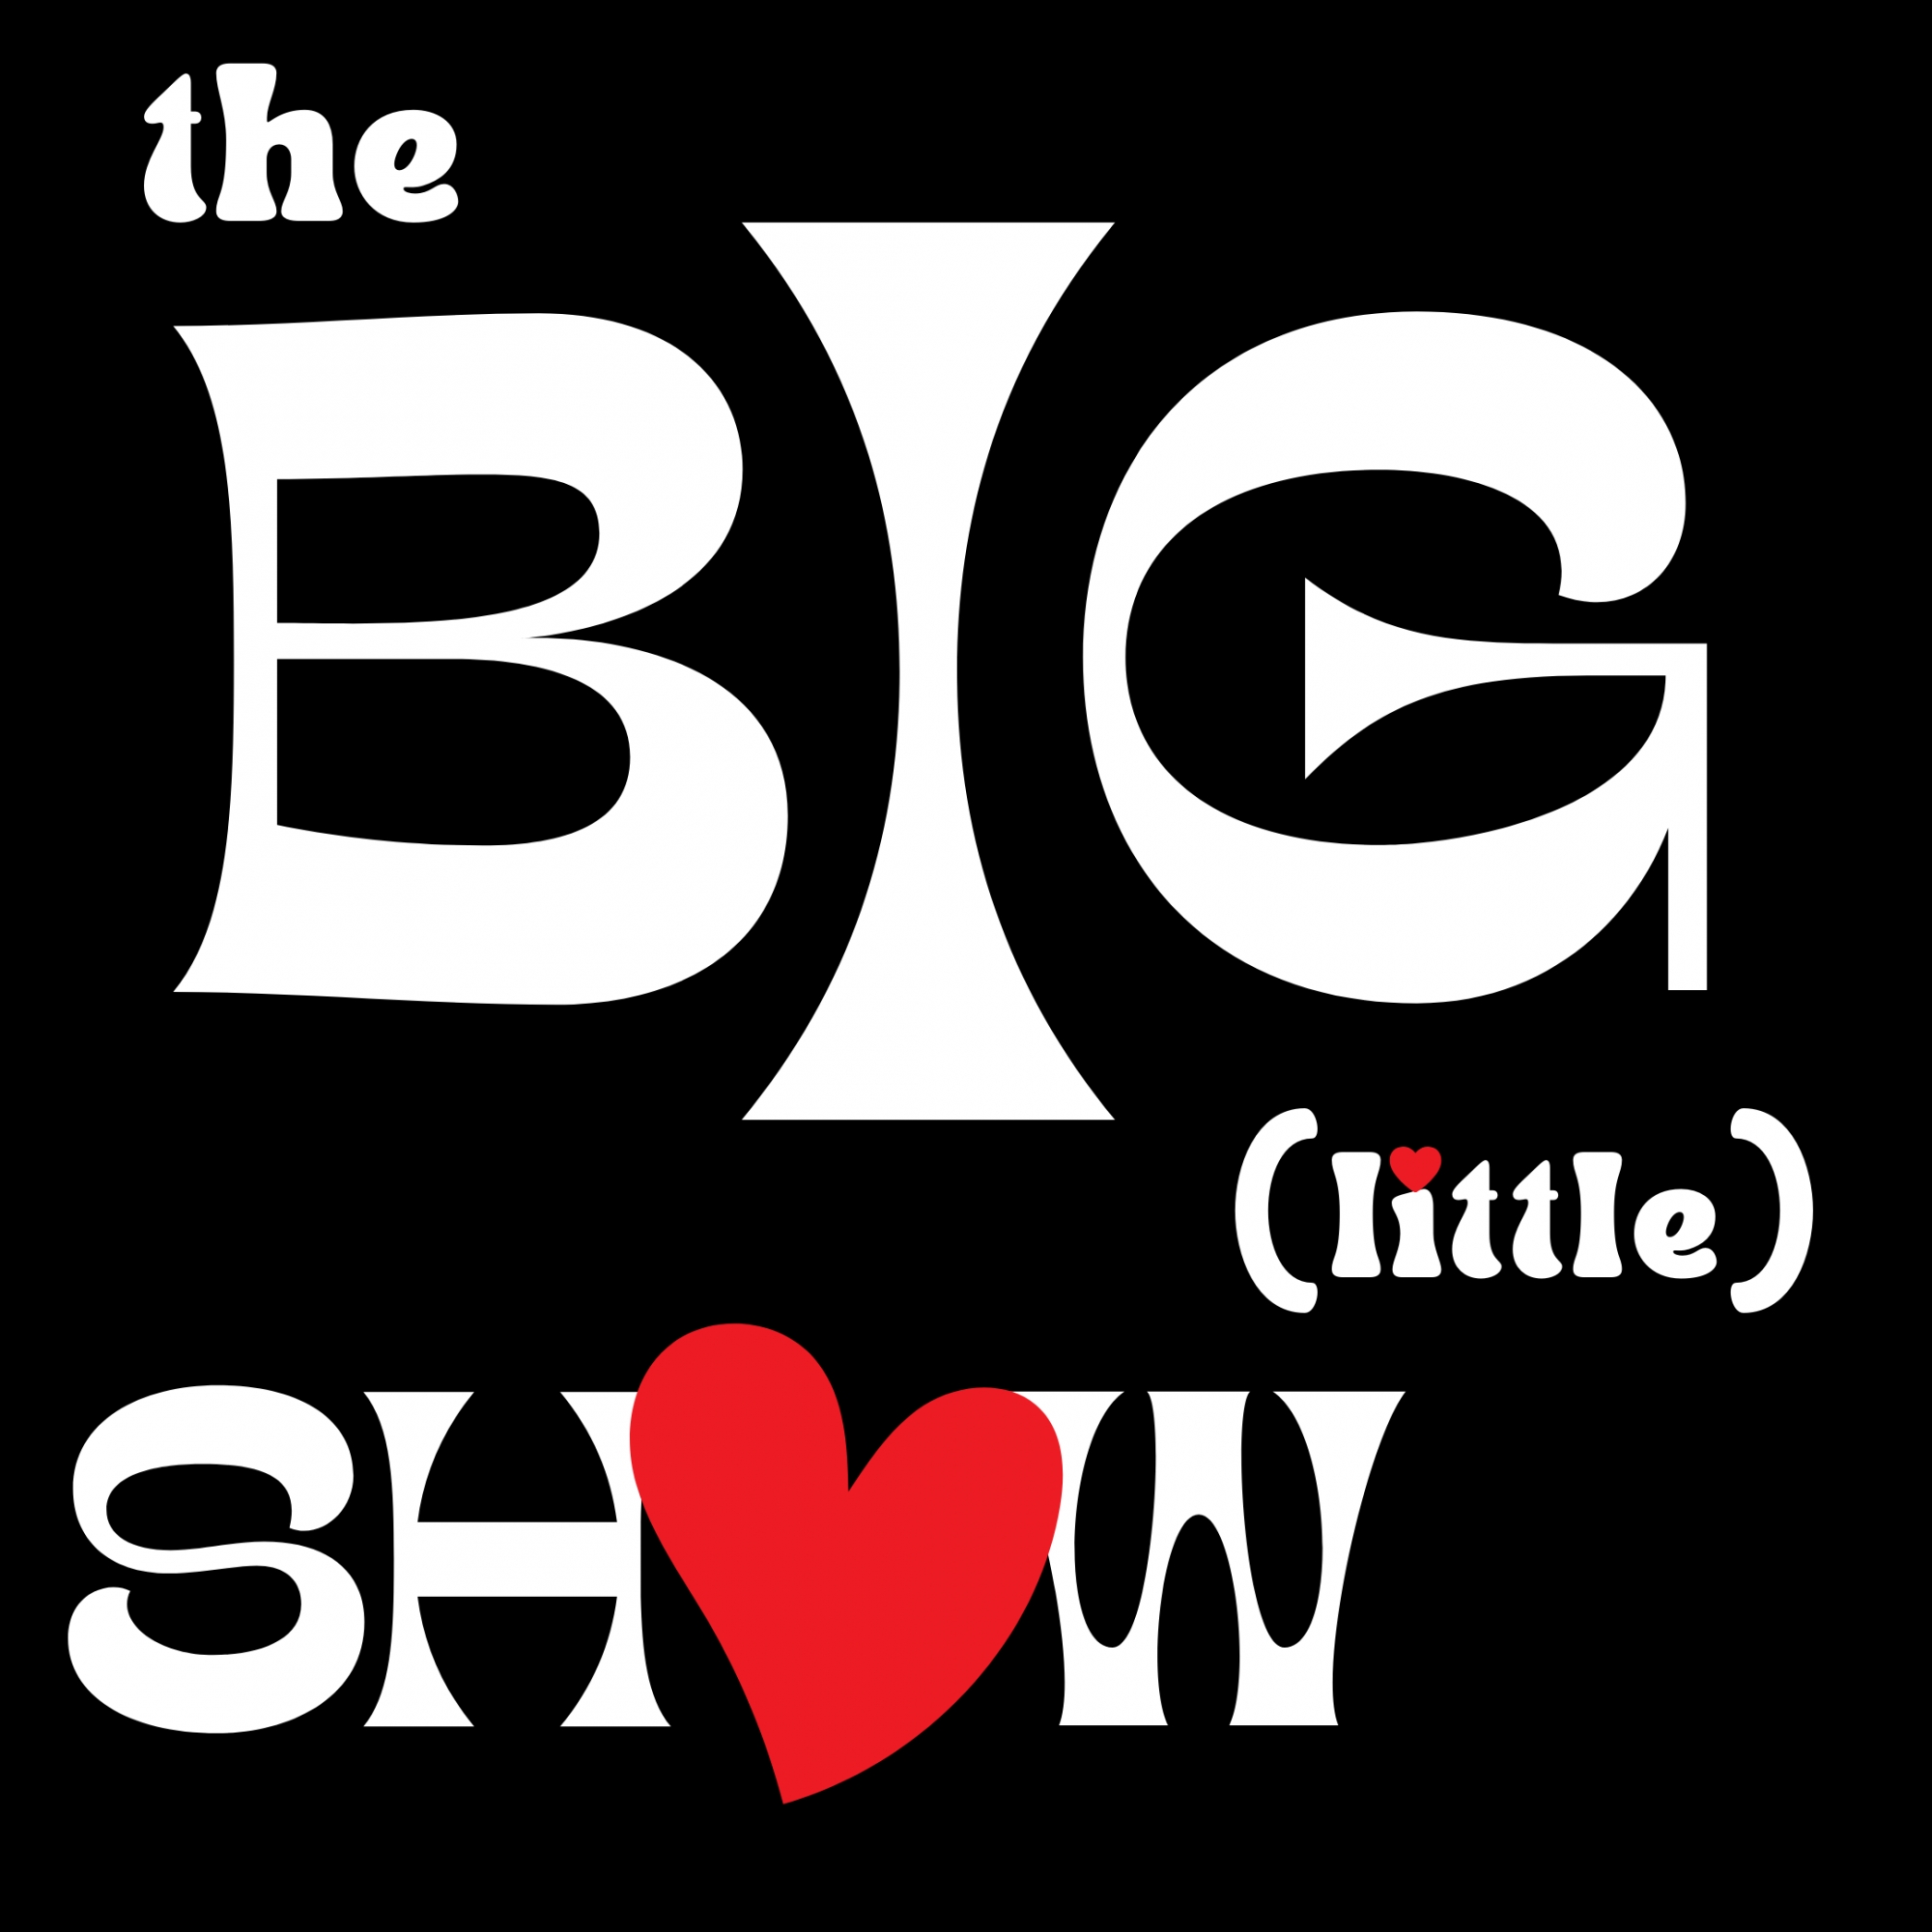 Dec '22 The Big (little) Show - Show 11